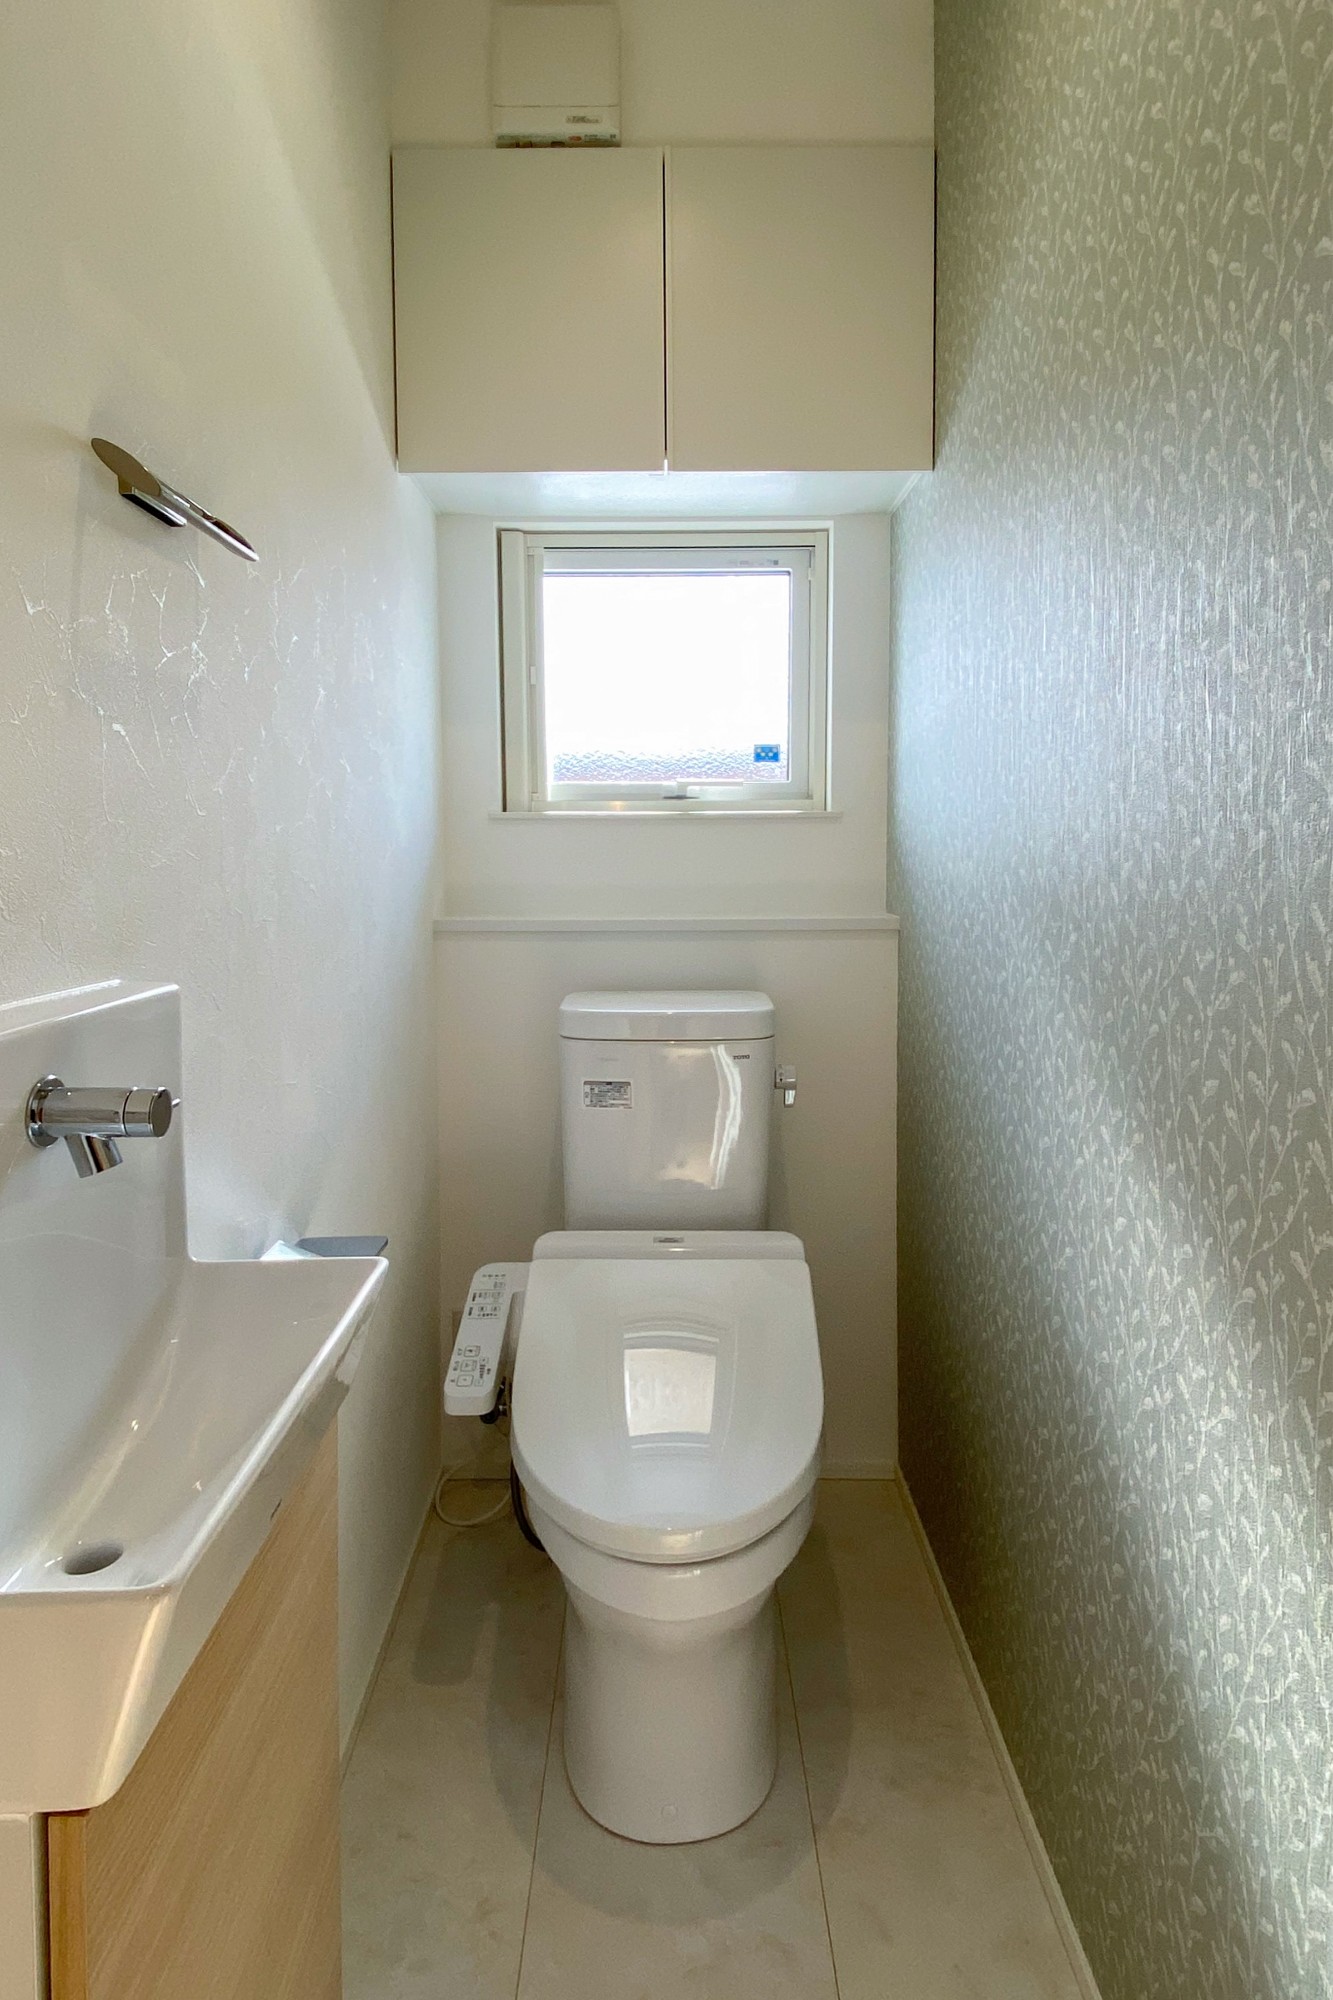 趣味室のある2世帯住宅のトイレ写真